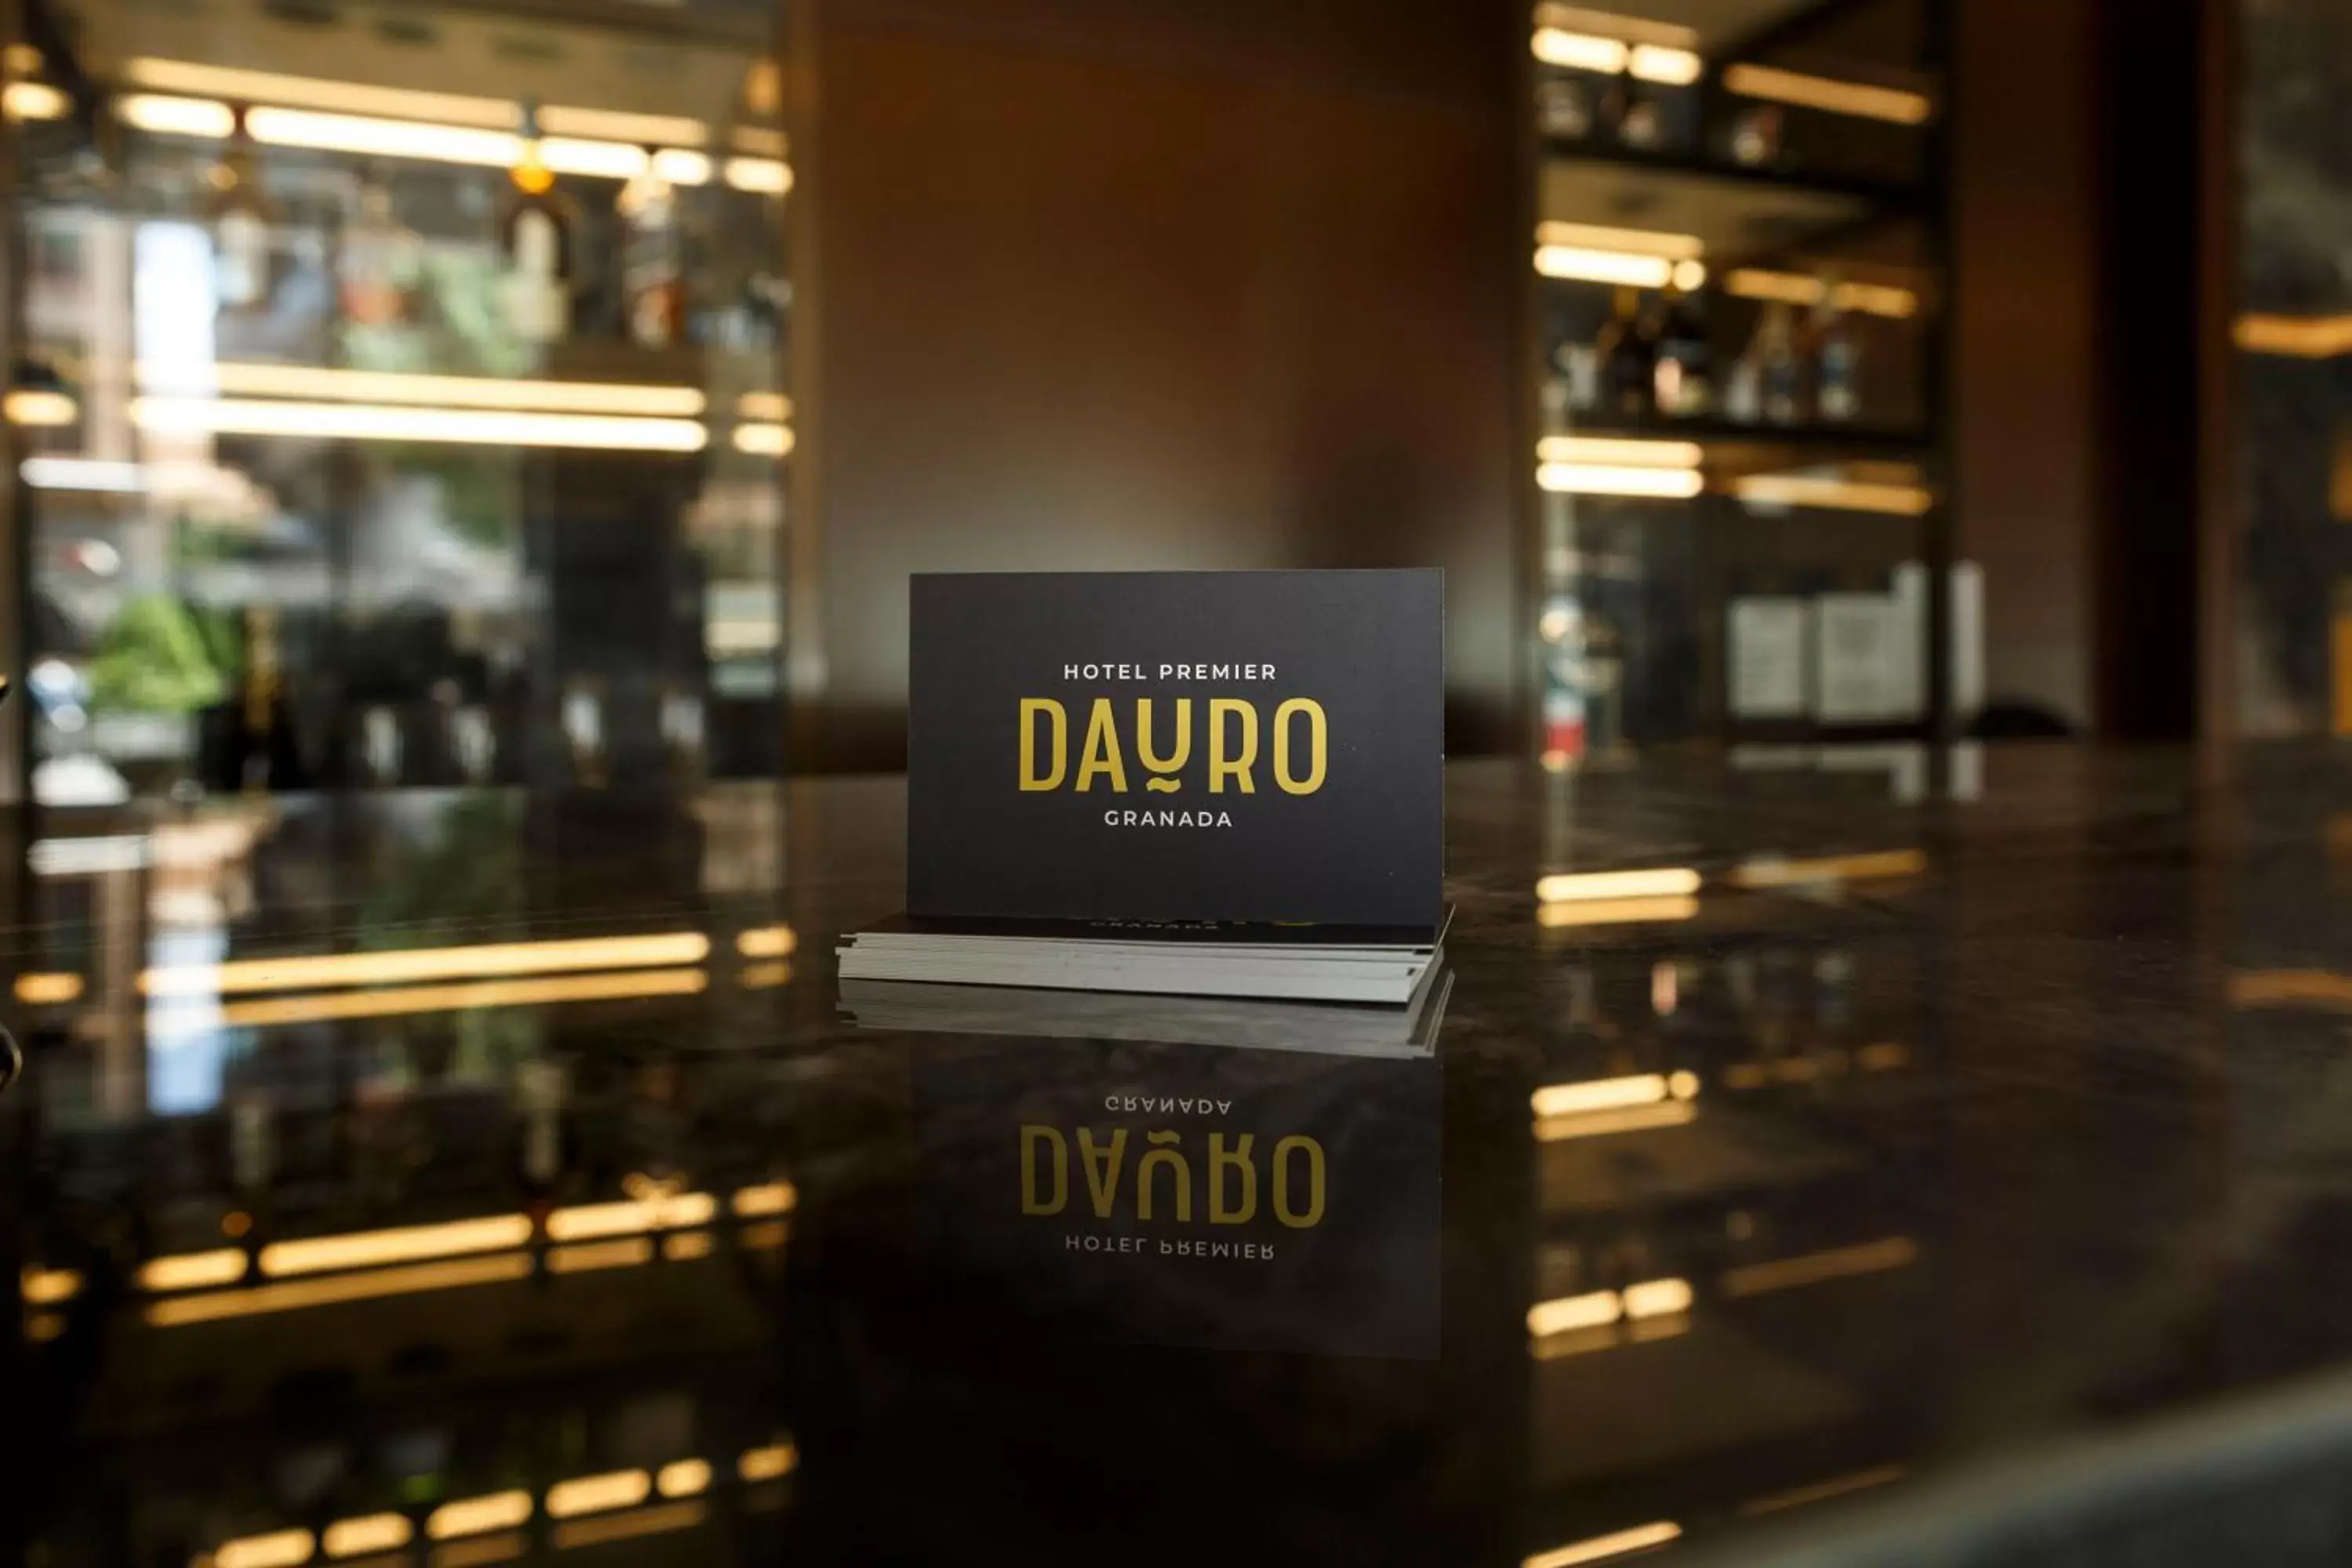 Lobby or reception in Hotel Dauro Premier